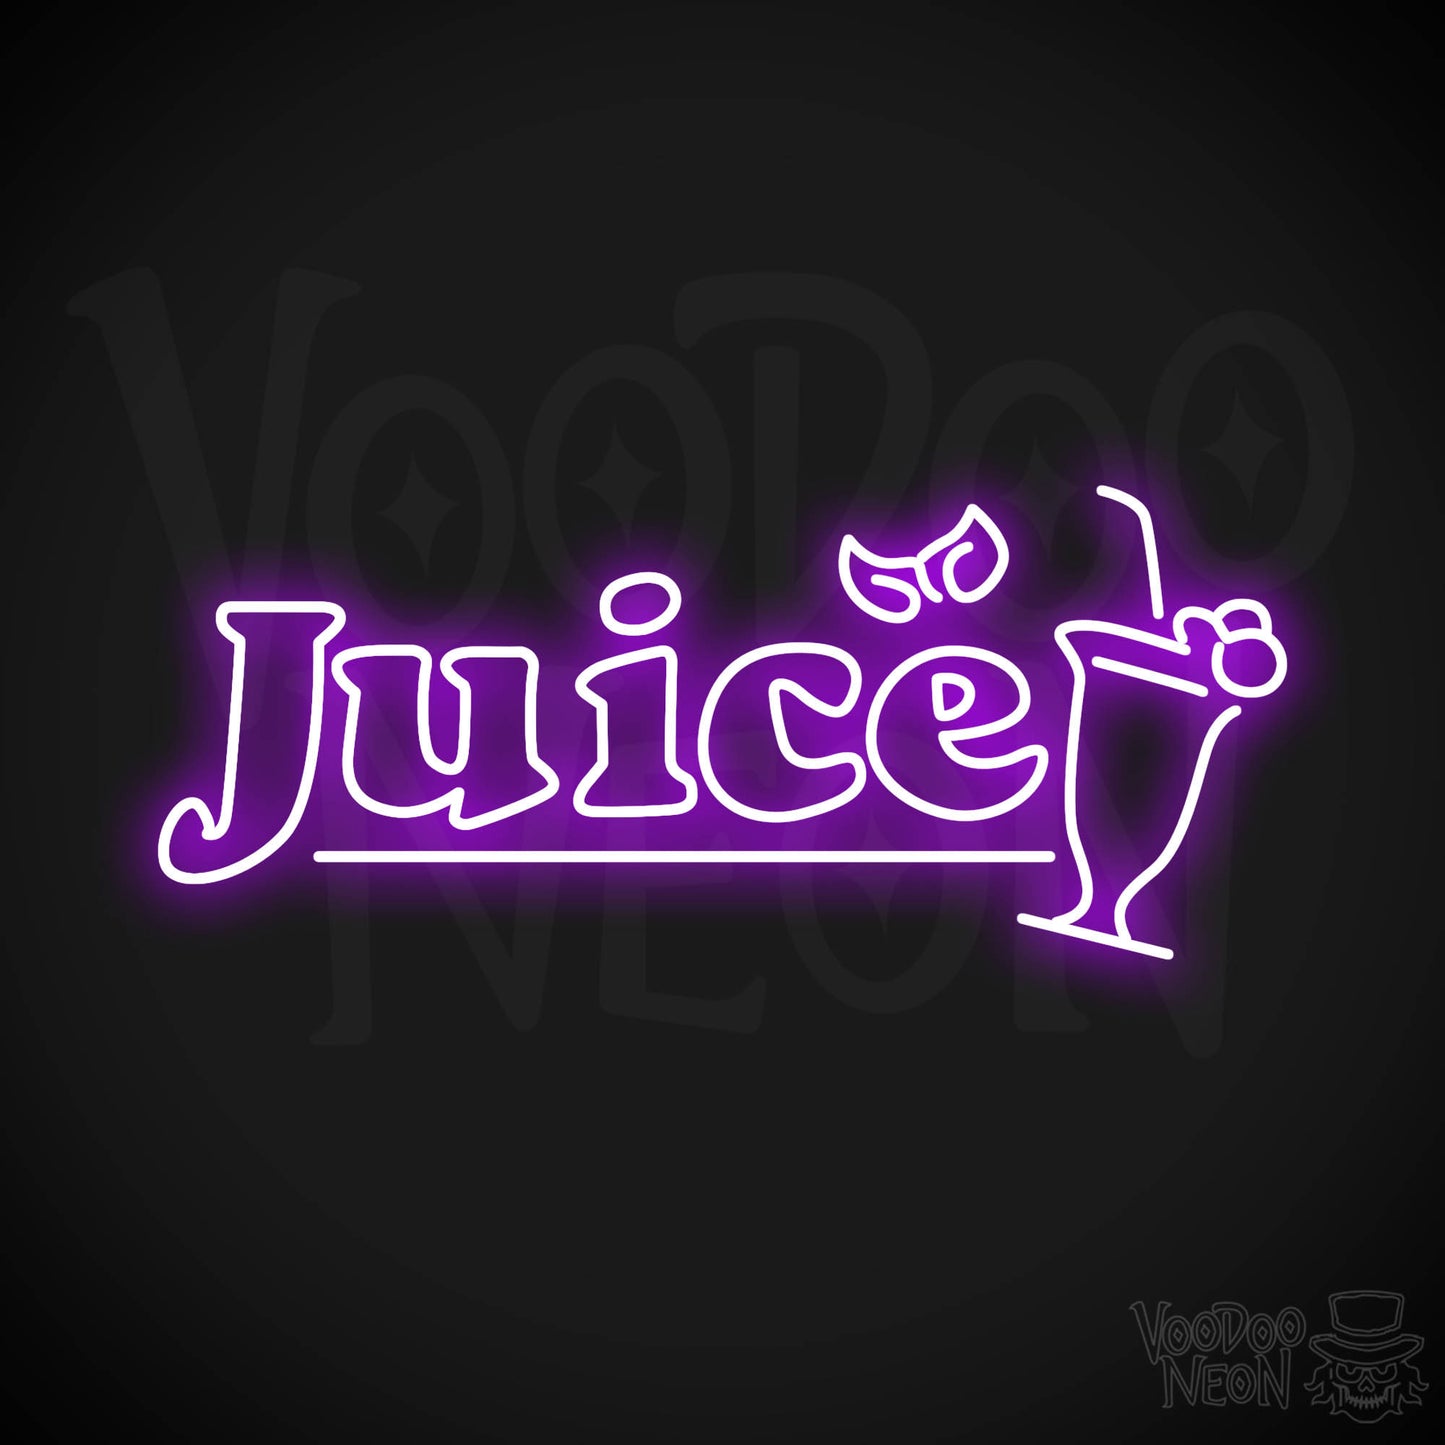 Juice LED Neon - Purple